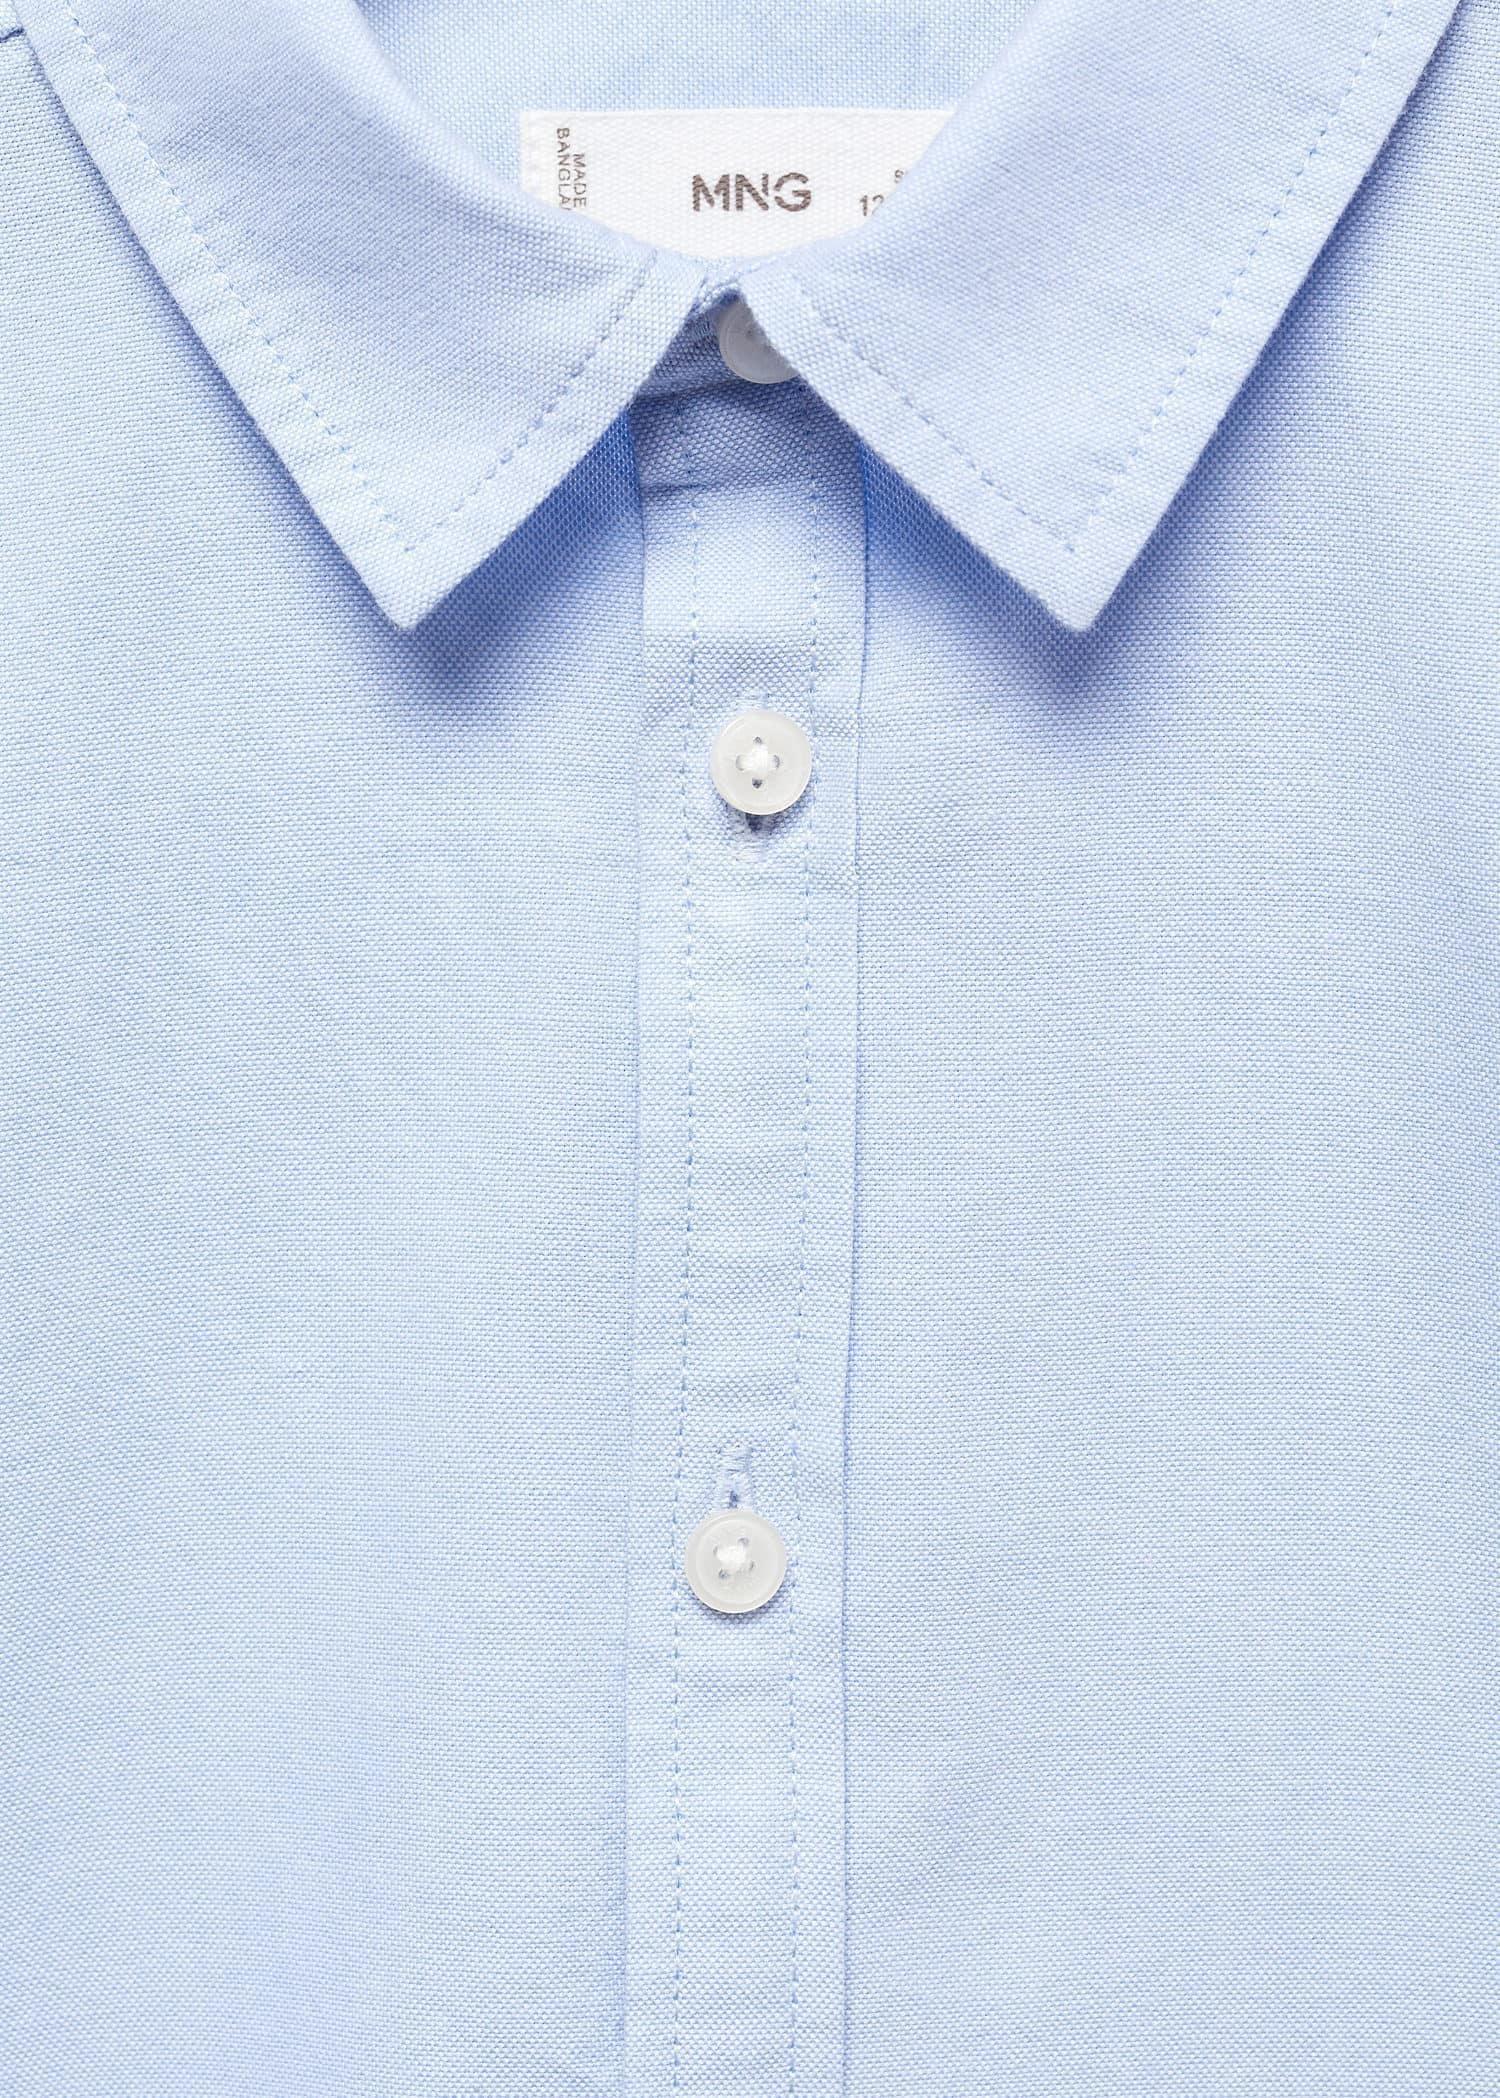 Mango - Blue Oxford Cotton Shirt, Kids Boys